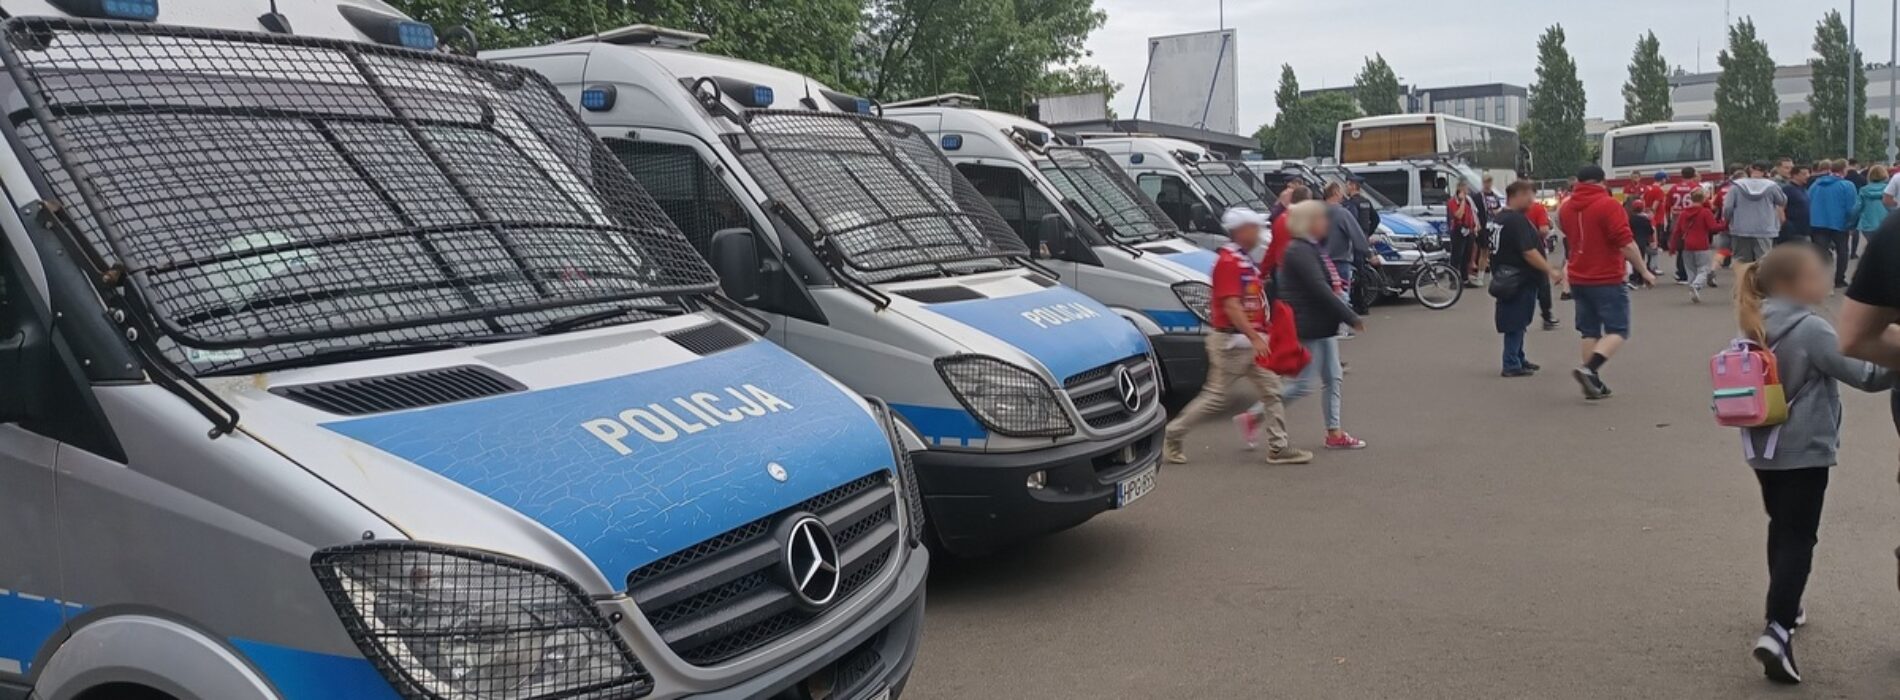 W Krakowie policjanci zabezpieczali mecz piłki nożnej